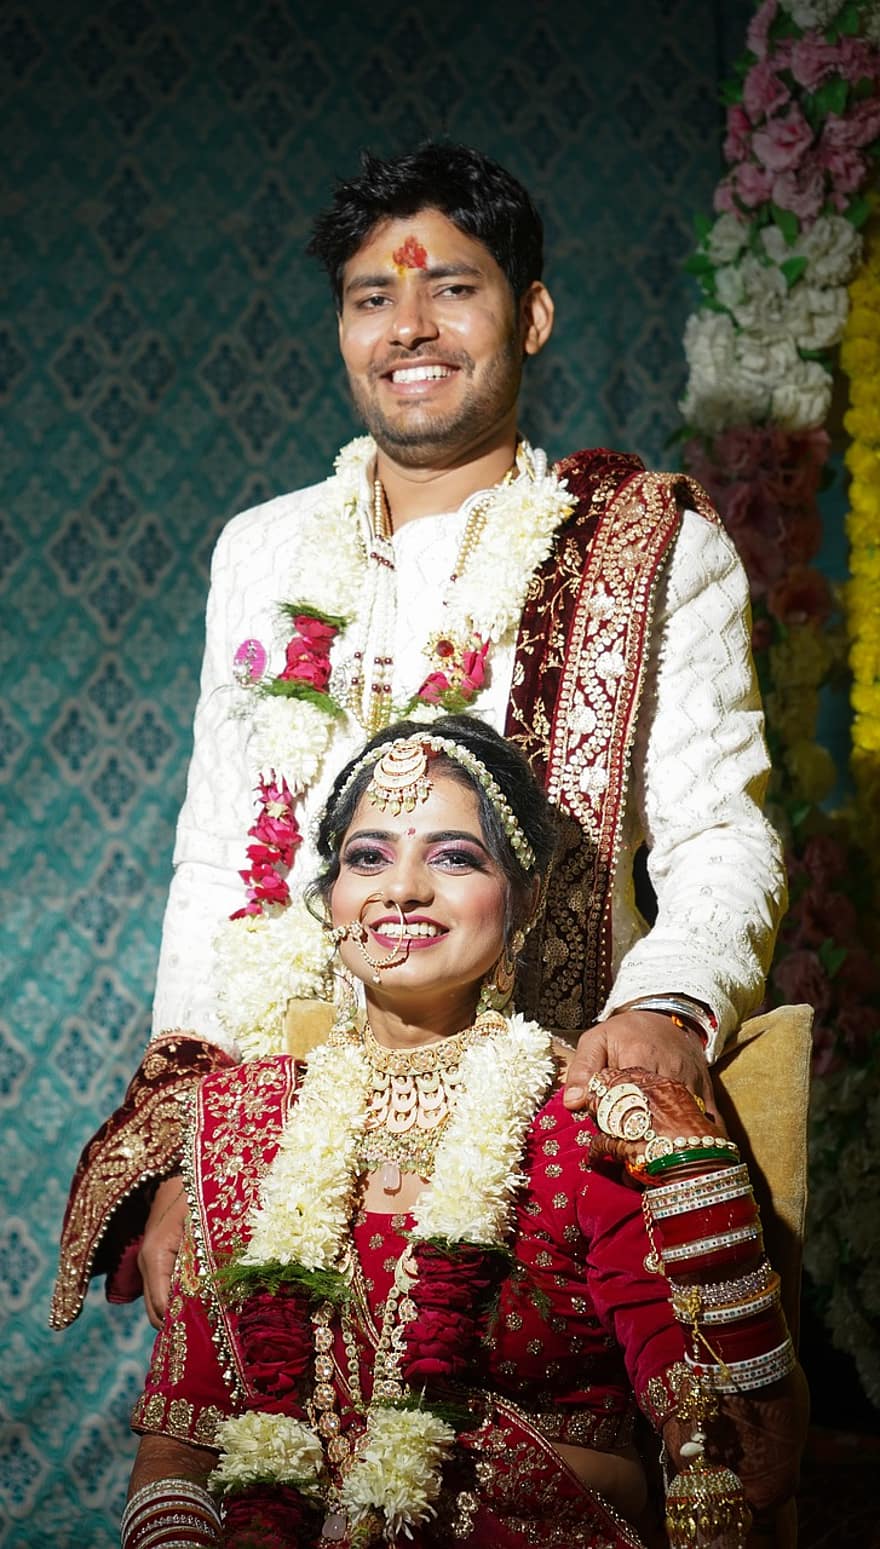 la mariée, jeune marié, Jour de mariage, pousse de mariage, mariage indien, mariée indienne, marié indien, marié mariée, avant mariage, portraits de mariage, Belle fille indienne